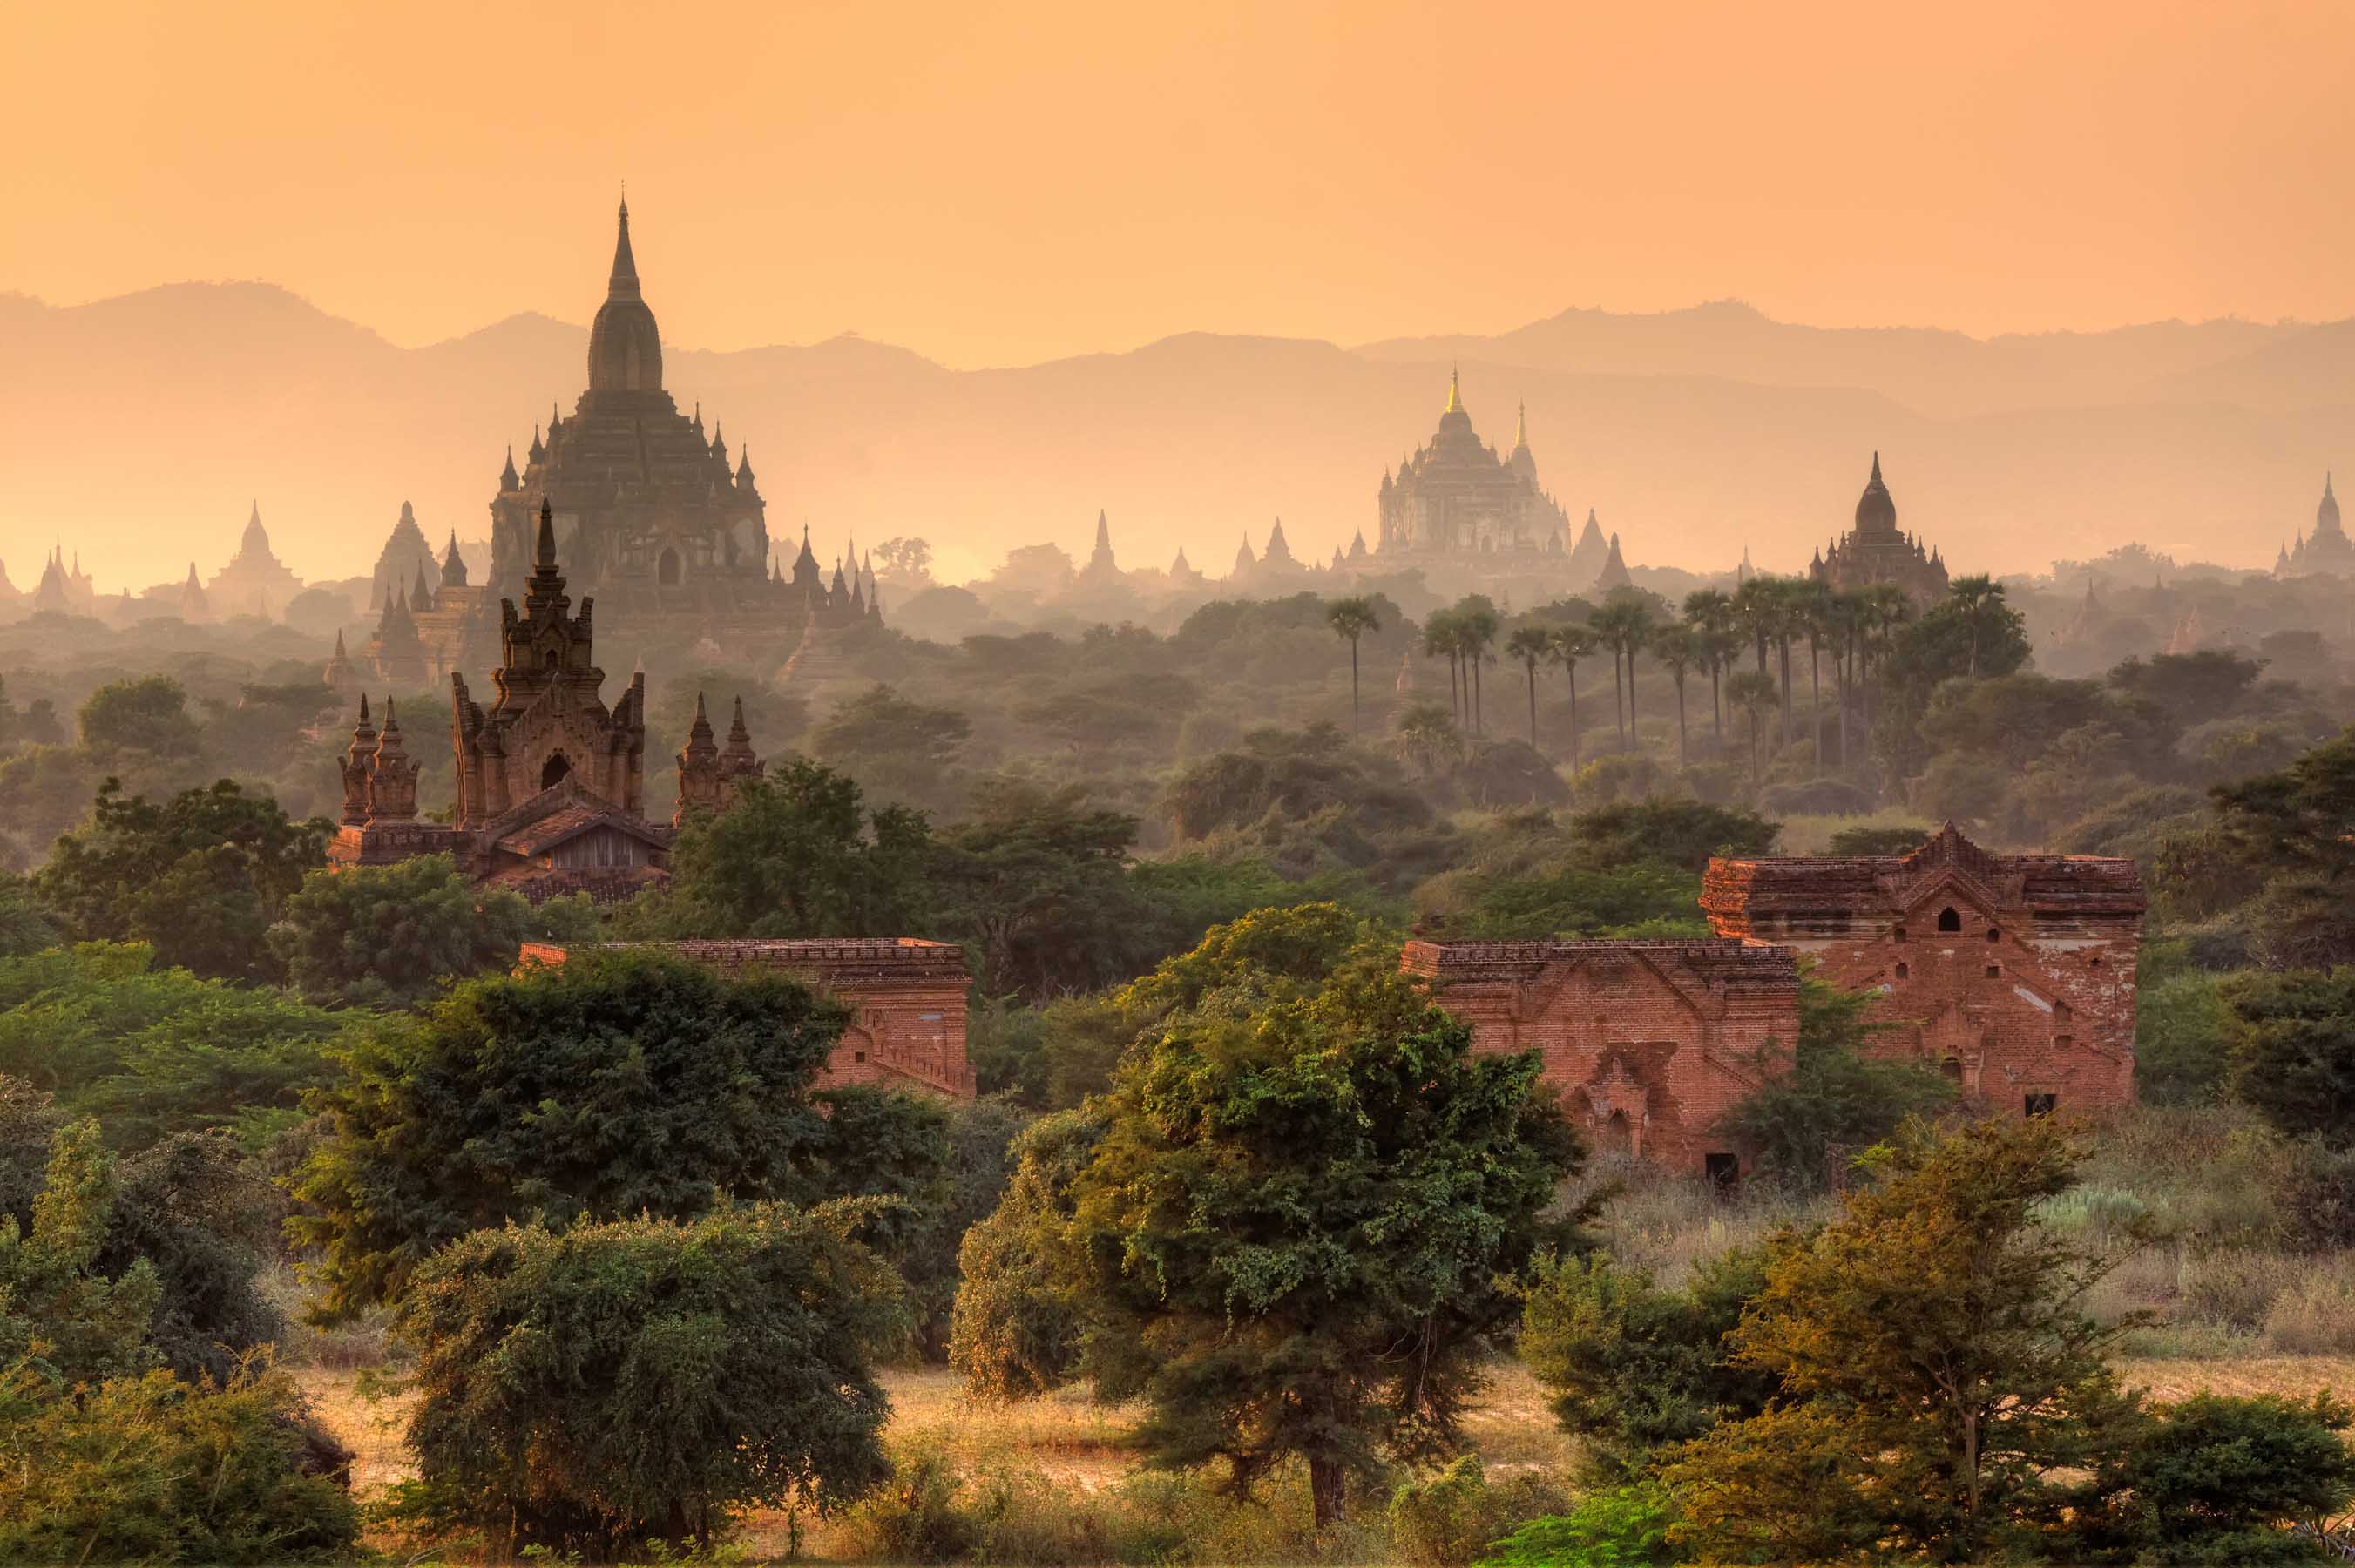 Man Made Bagan HD Wallpaper | Background Image